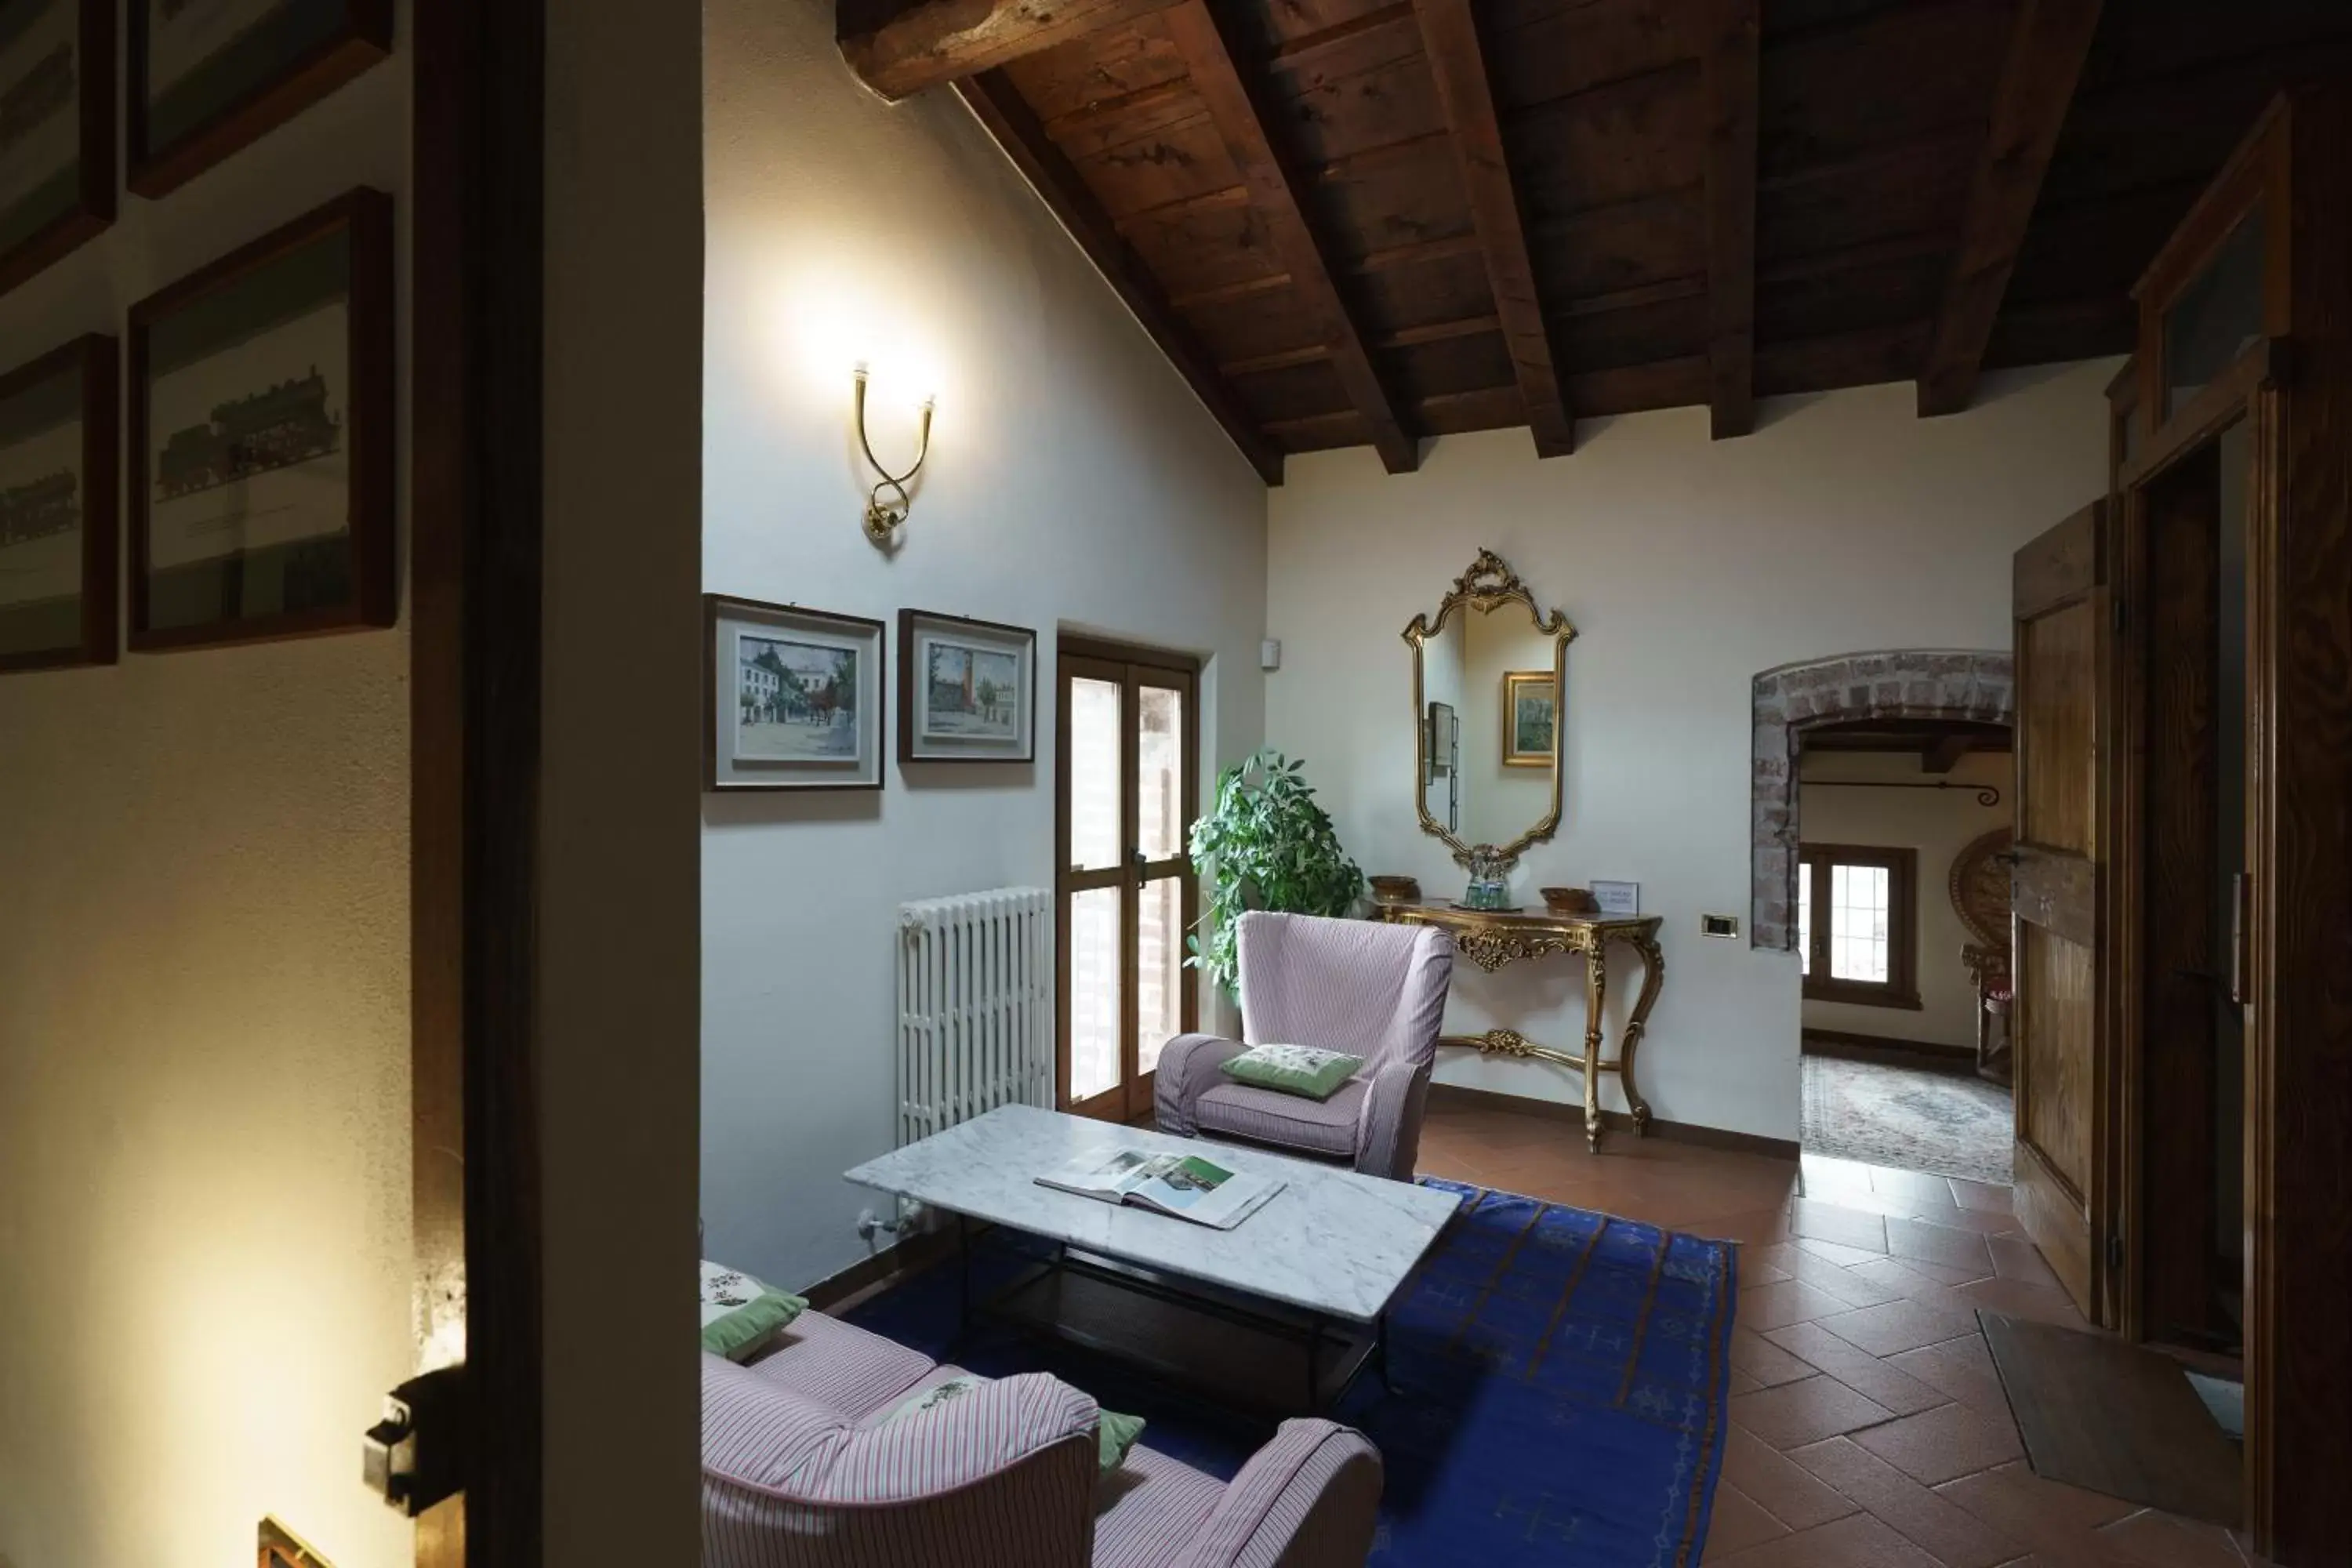 Photo of the whole room, Seating Area in Castello di Cernusco Lombardone